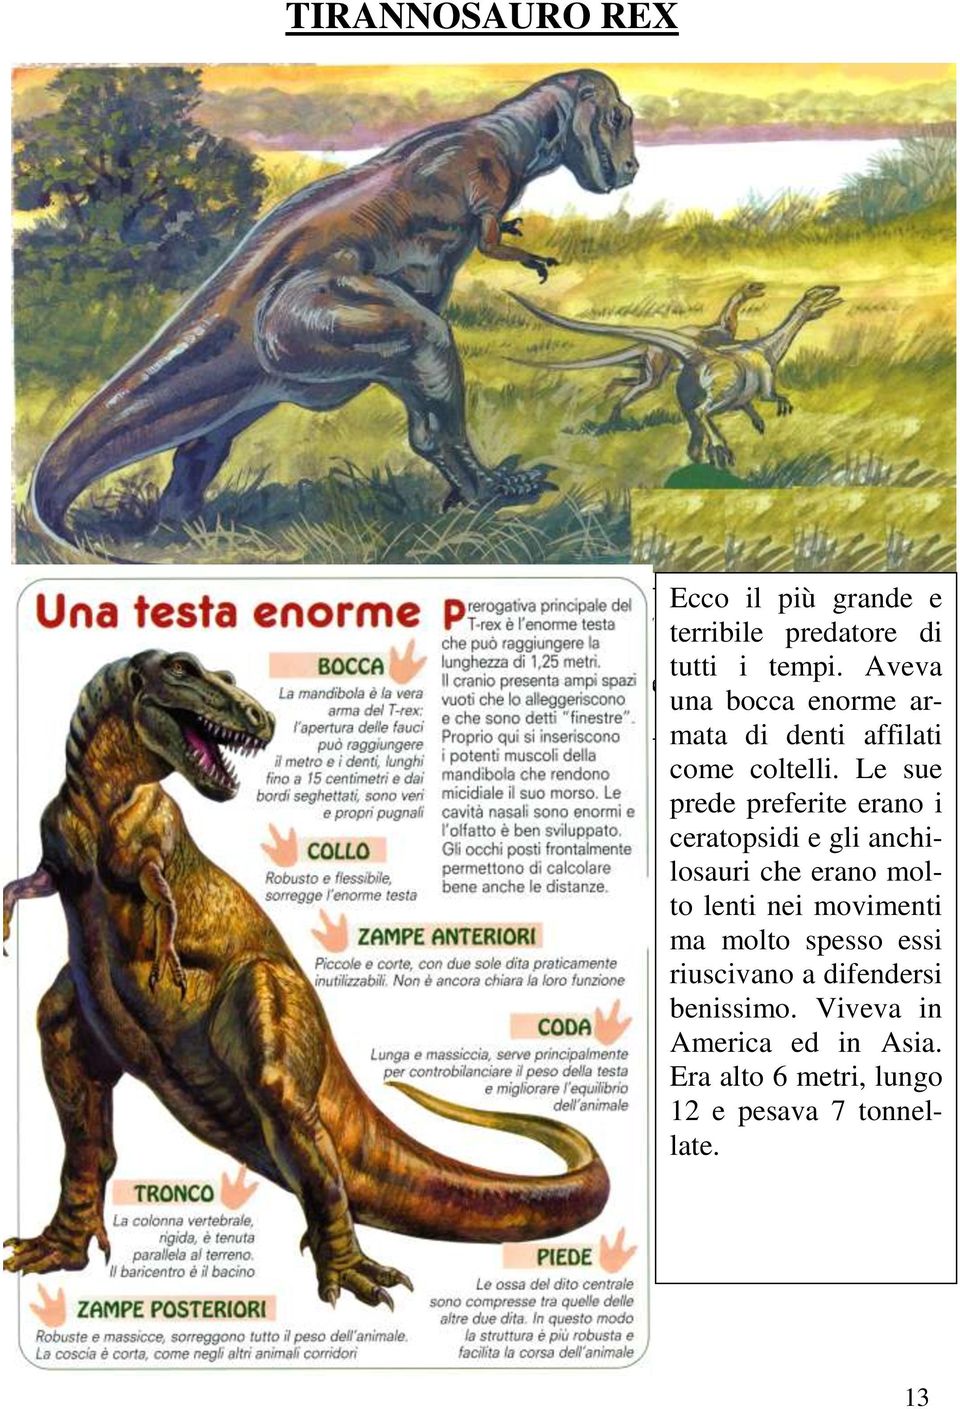 Le sue prede preferite erano i ceratopsidi e gli anchilosauri che erano molto lenti nei movimenti ma molto